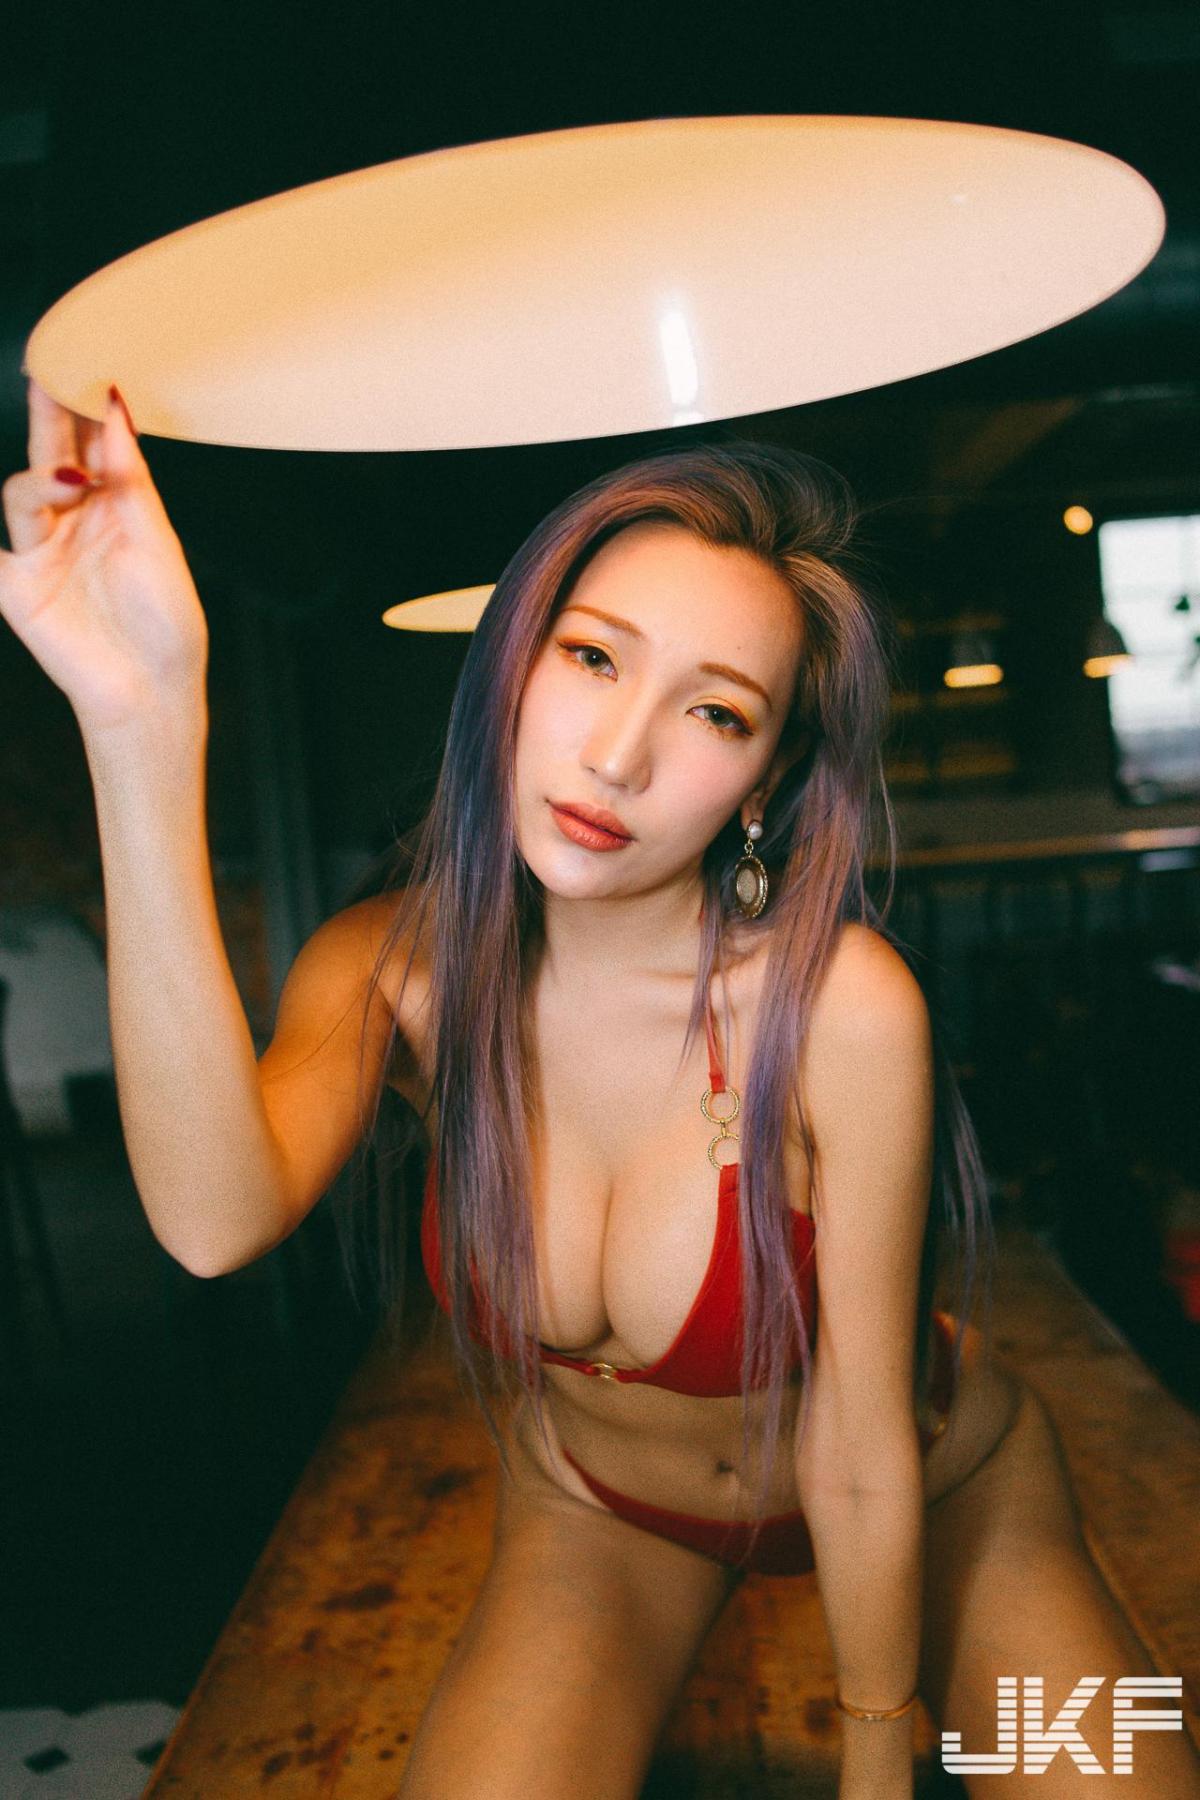 34G is hot! Taiwanese Girl Yun Yun Bikini photos